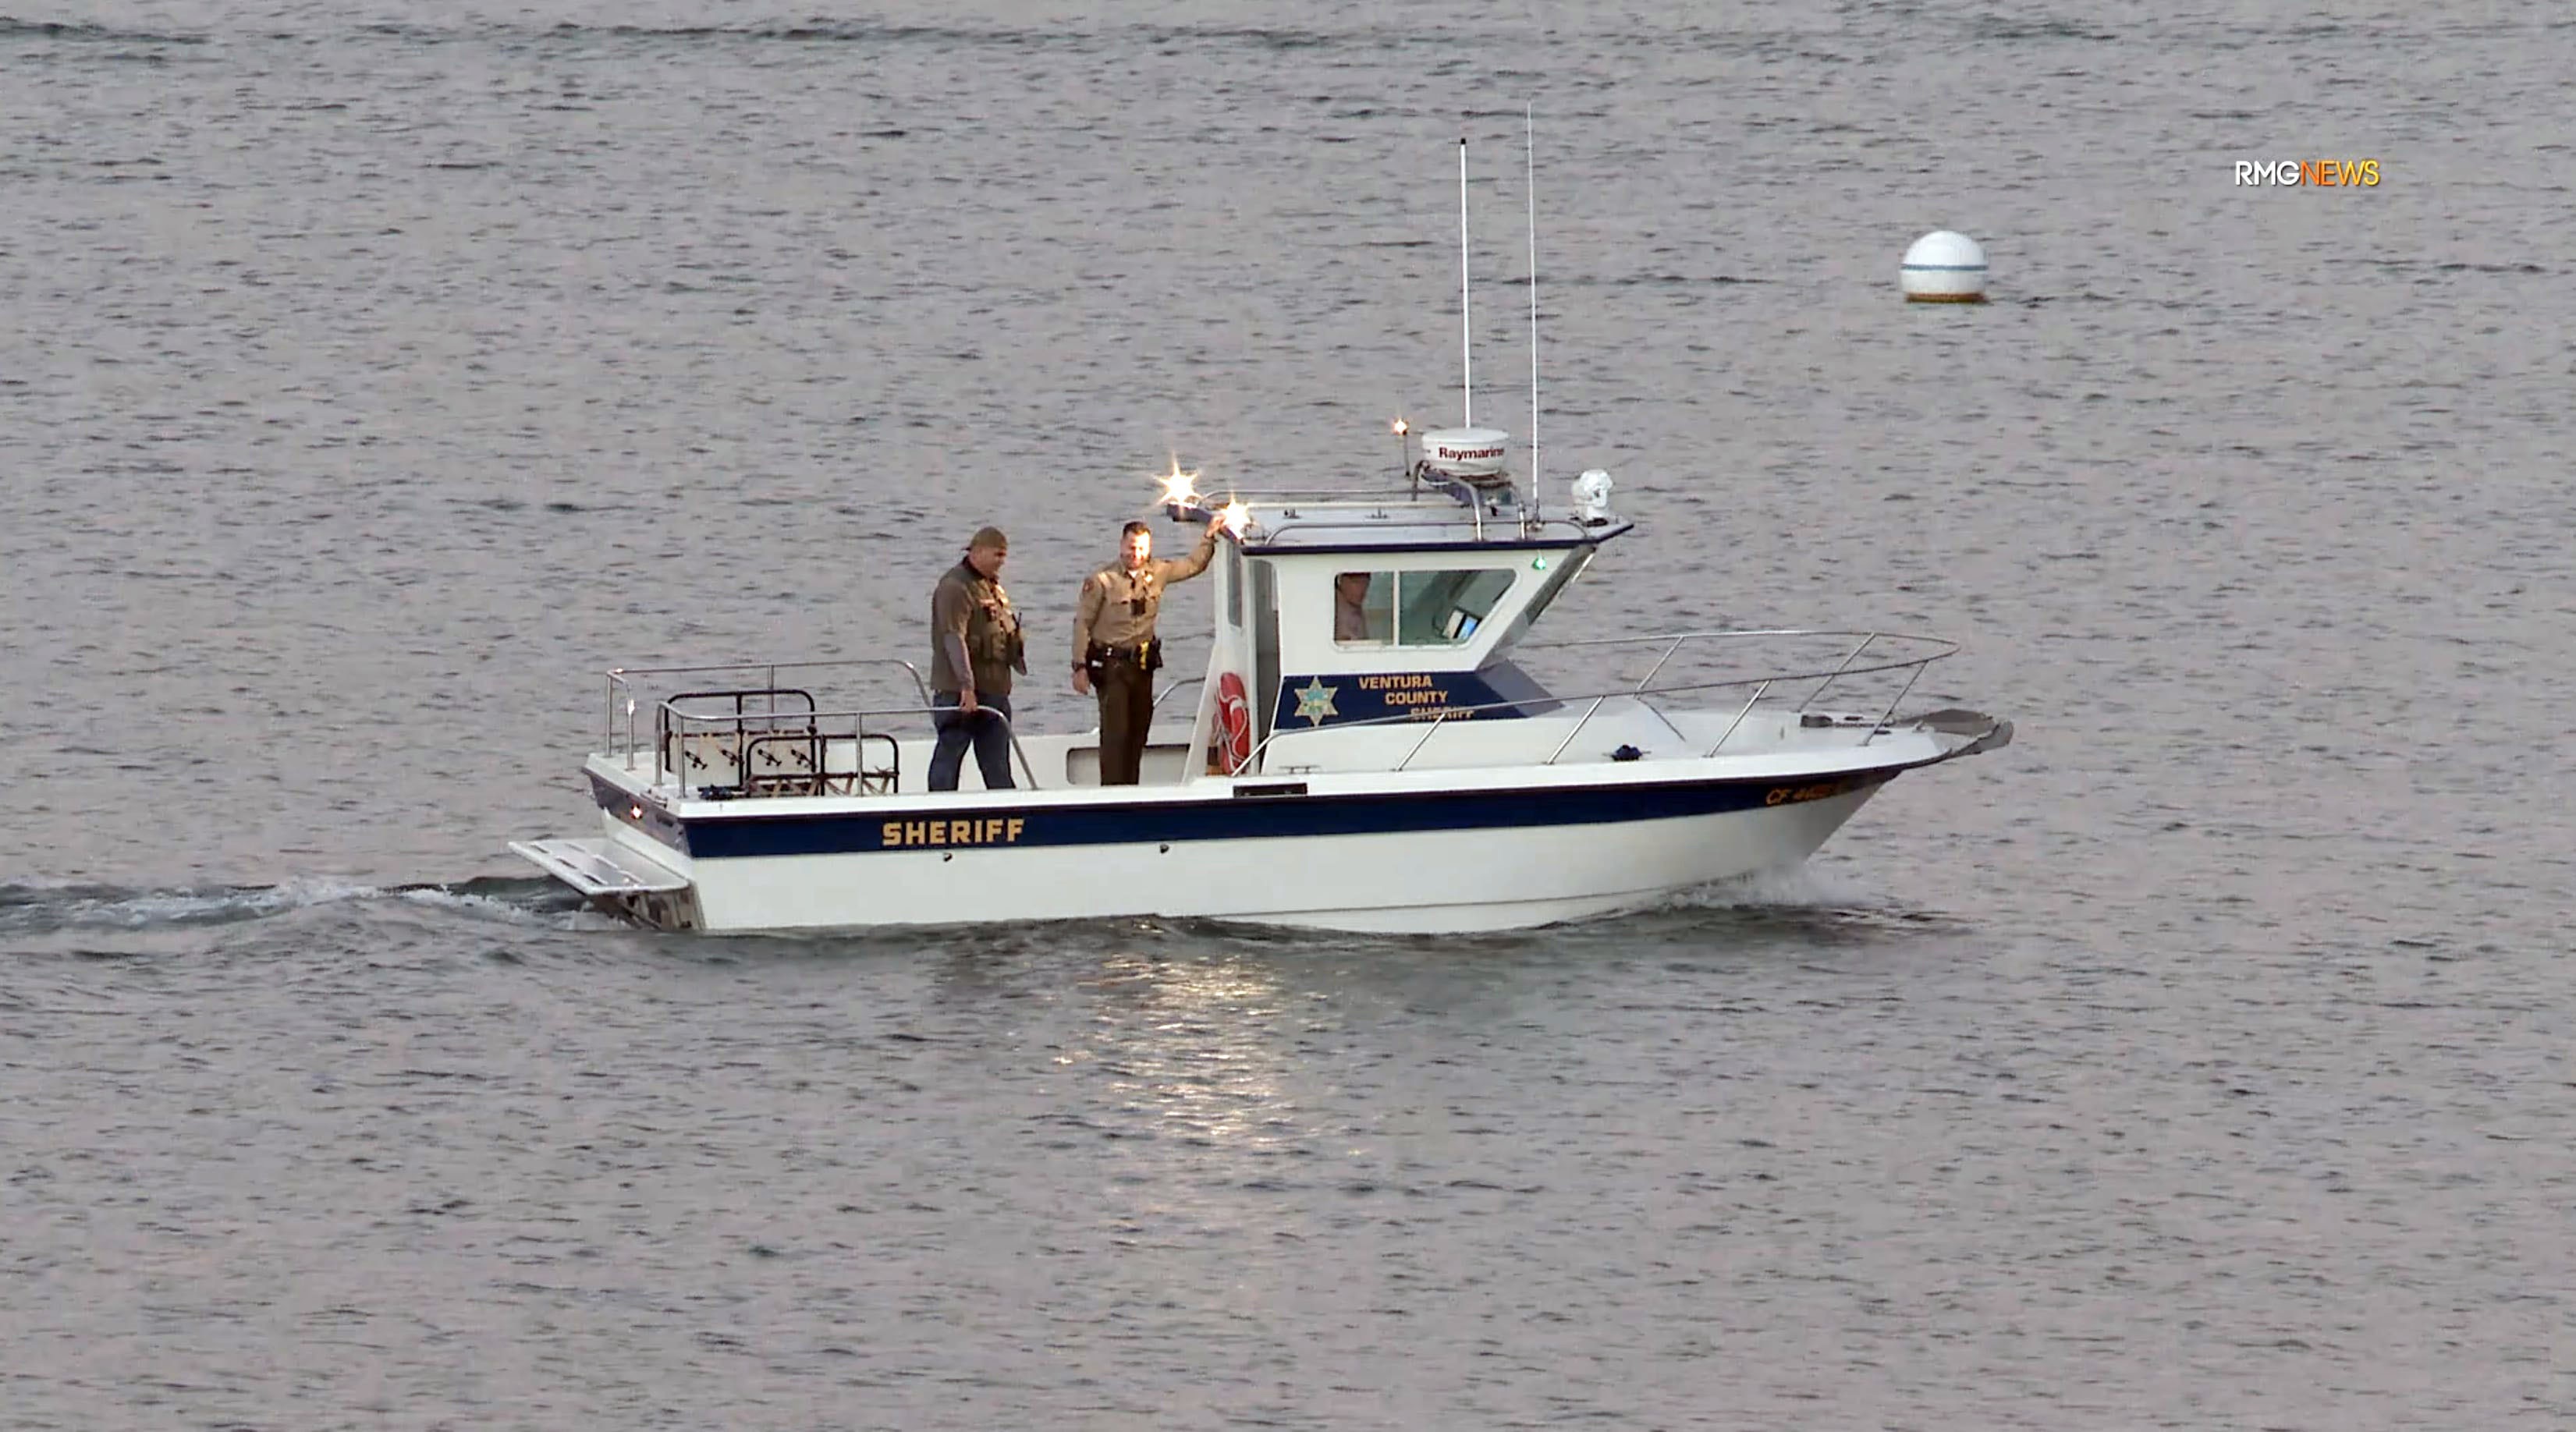 Buscas por Naya Rivera continuam em lago (Foto: The Grosby Group)